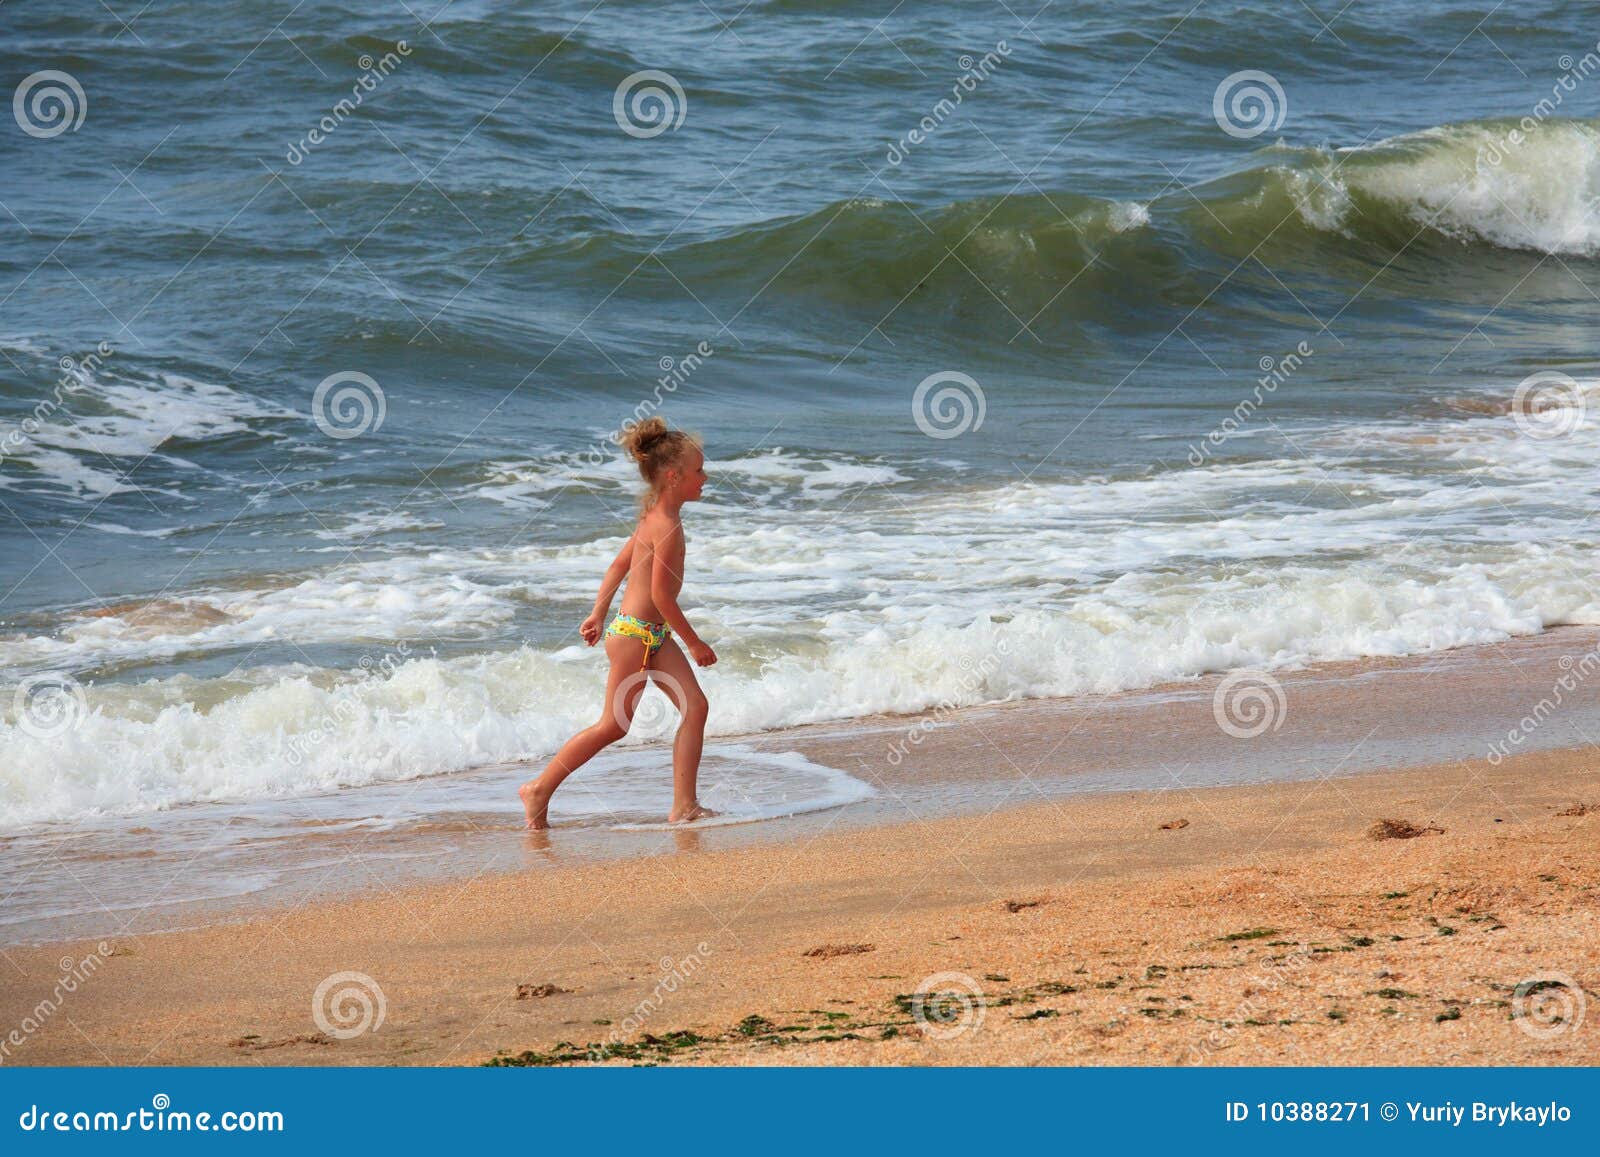 нудиский пляж с голыми детьми фото 60